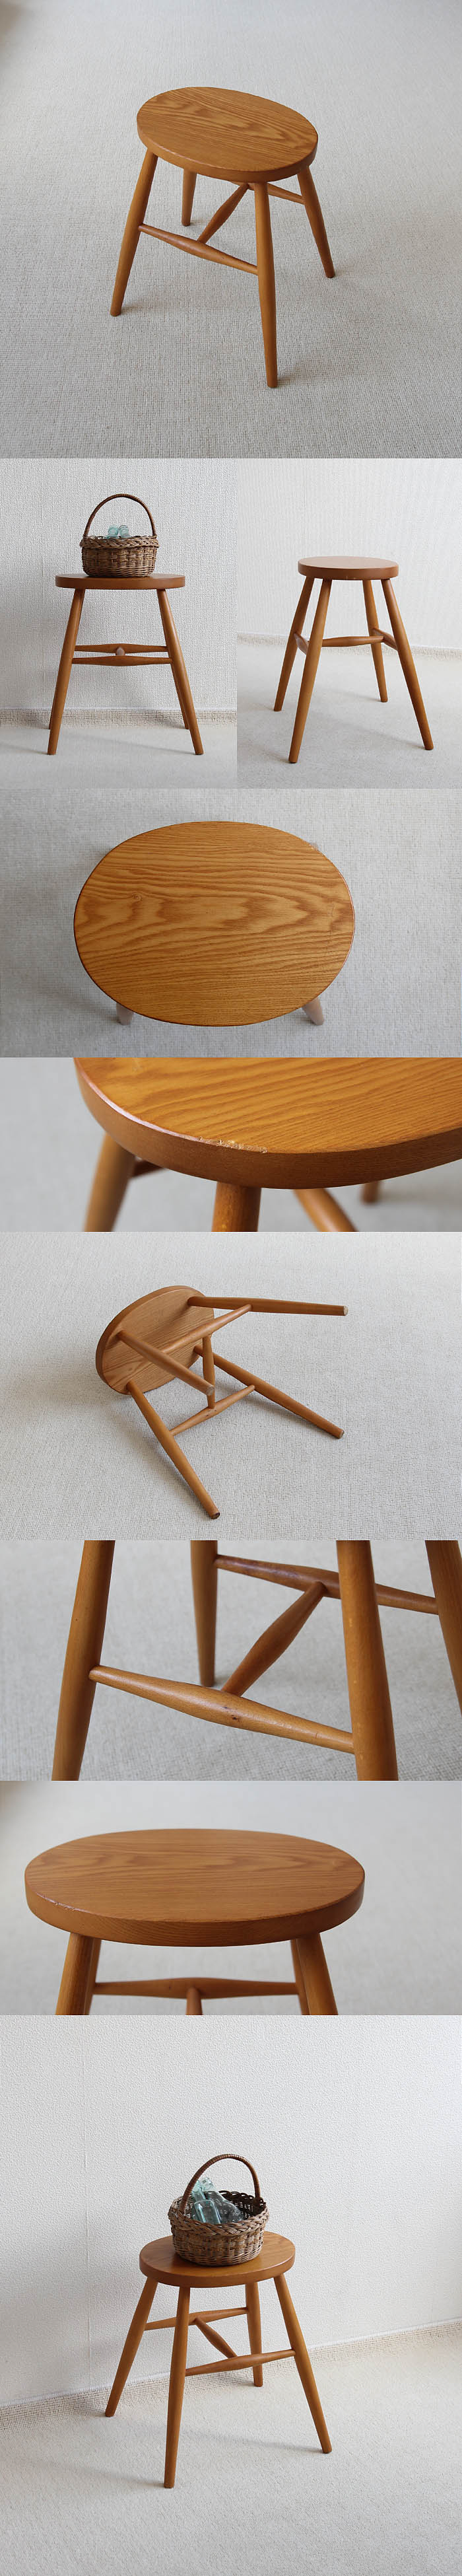 イギリス ヴィンテージ スツール 木製椅子 飾り台 カントリー 無垢材 家具 V-278